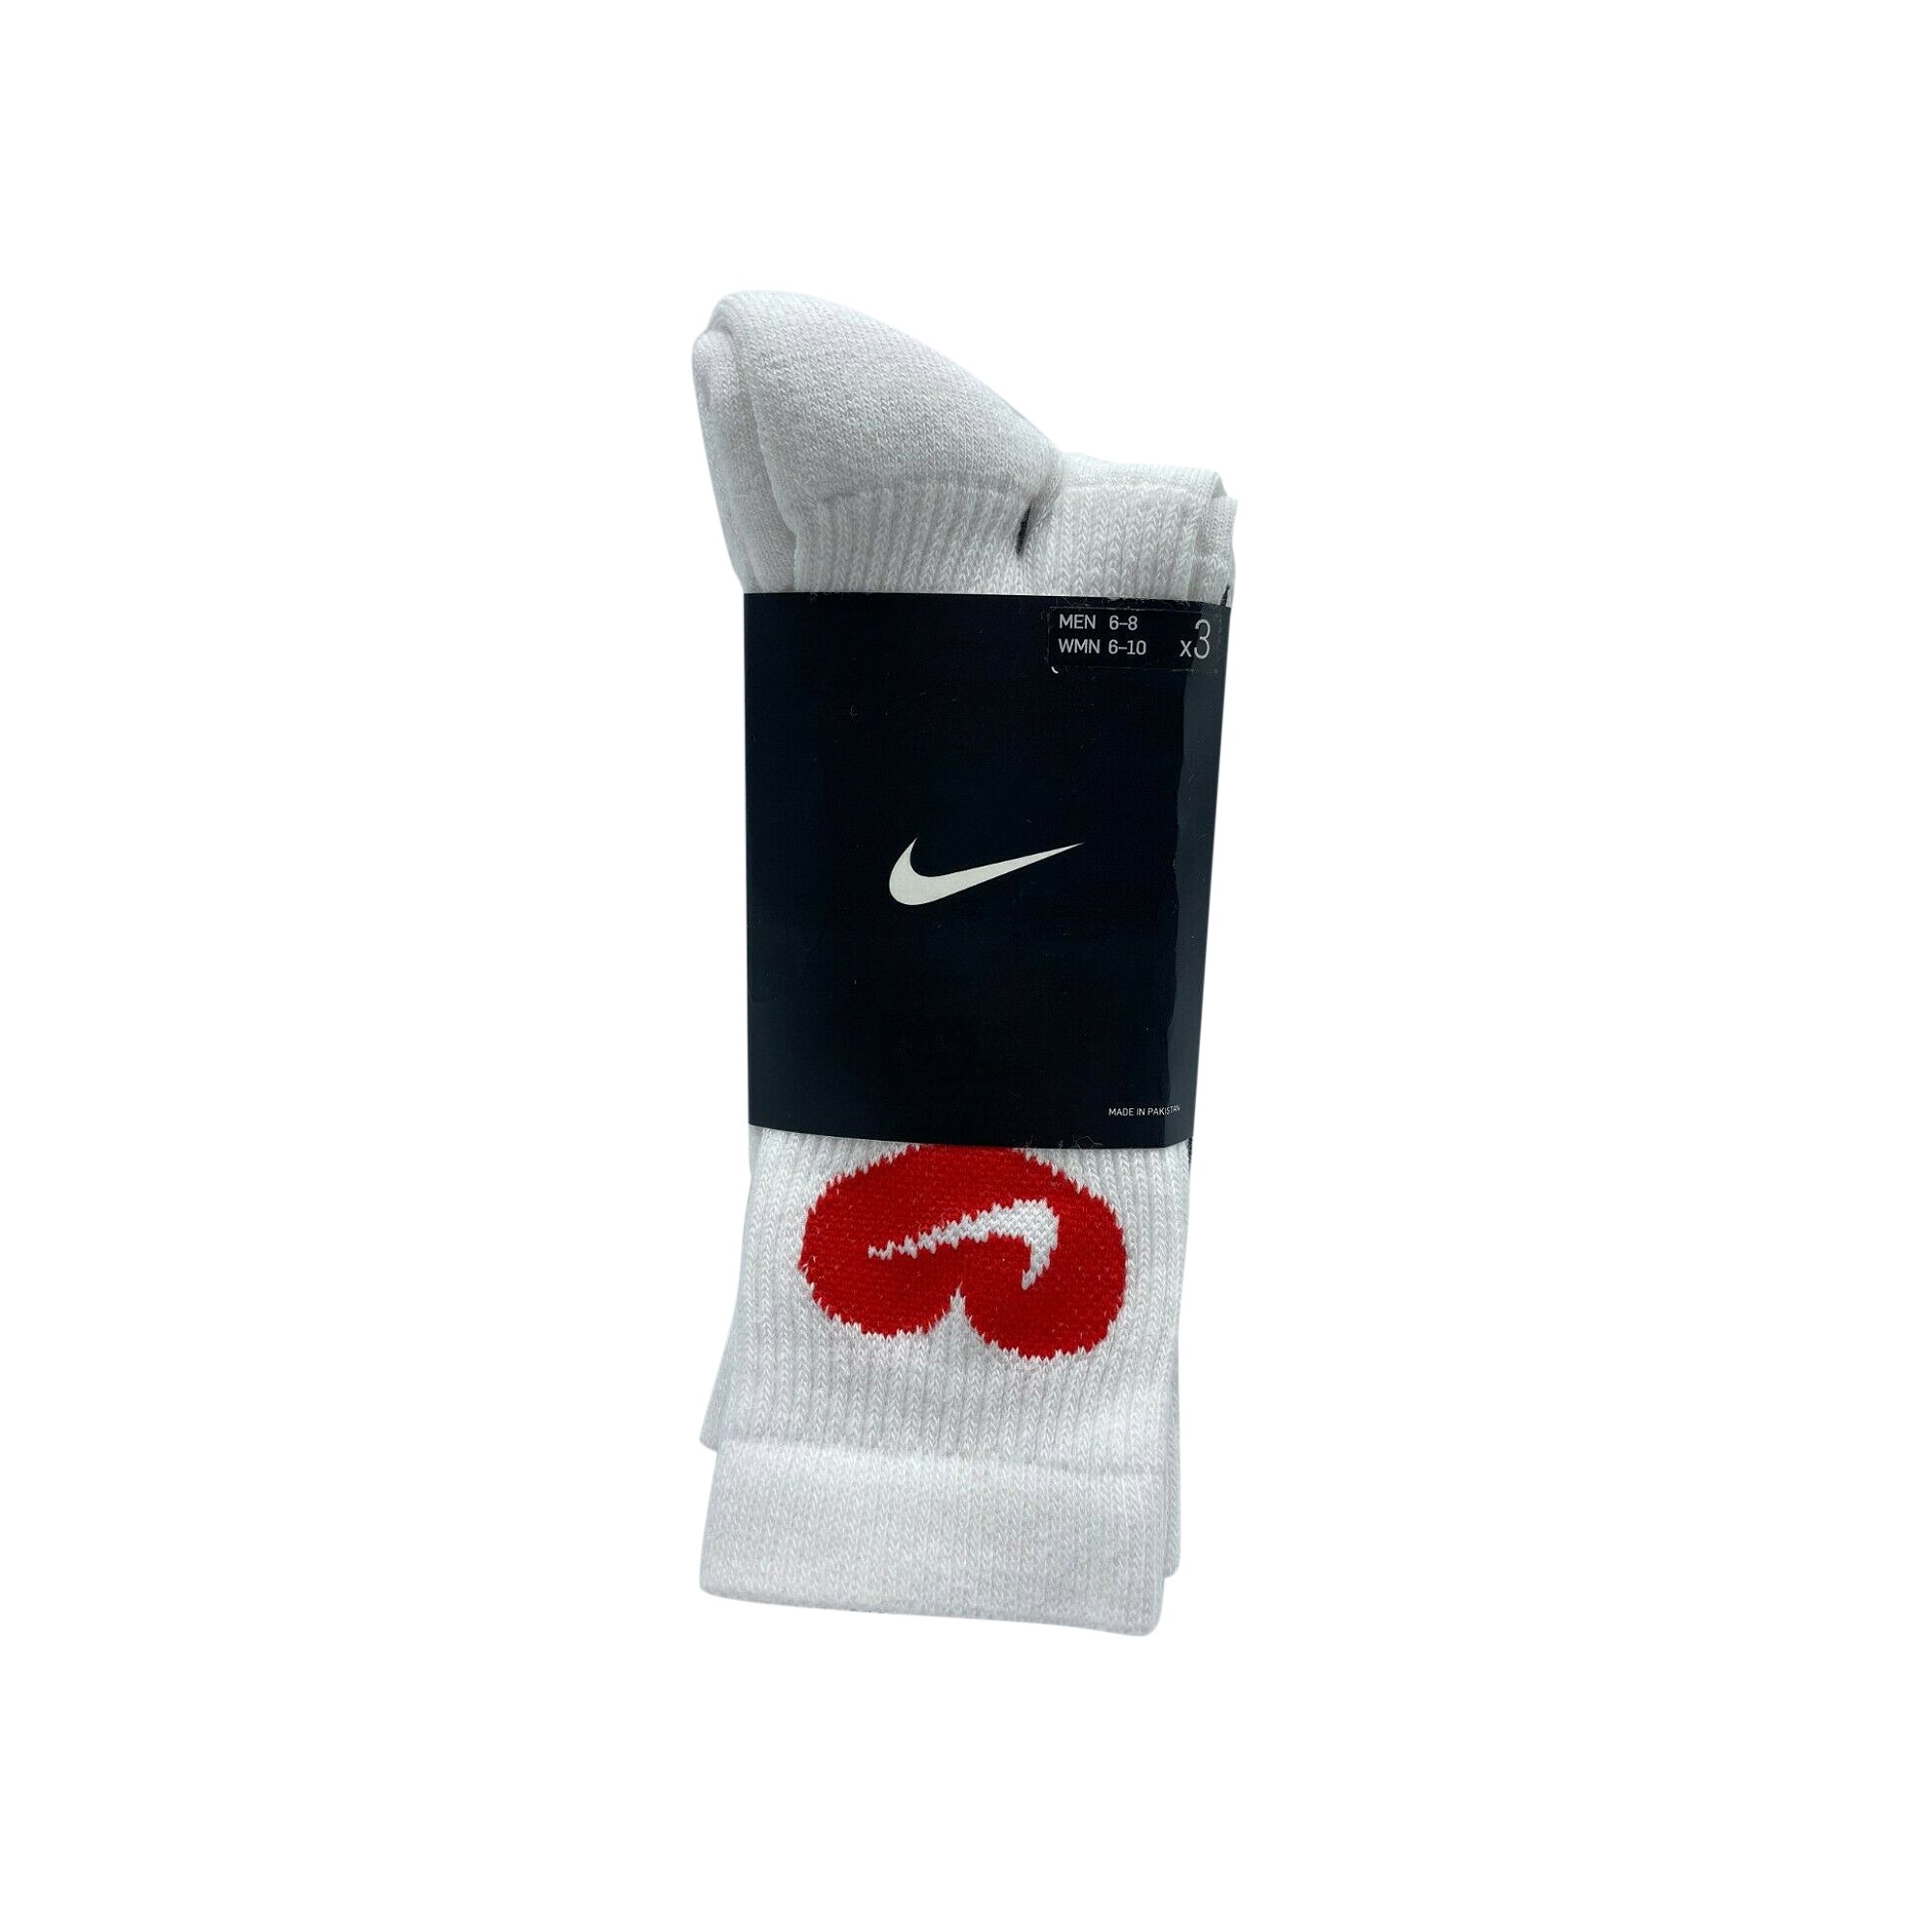 Сертифицированные носки Nike Lover Boy (3 шт.), белые